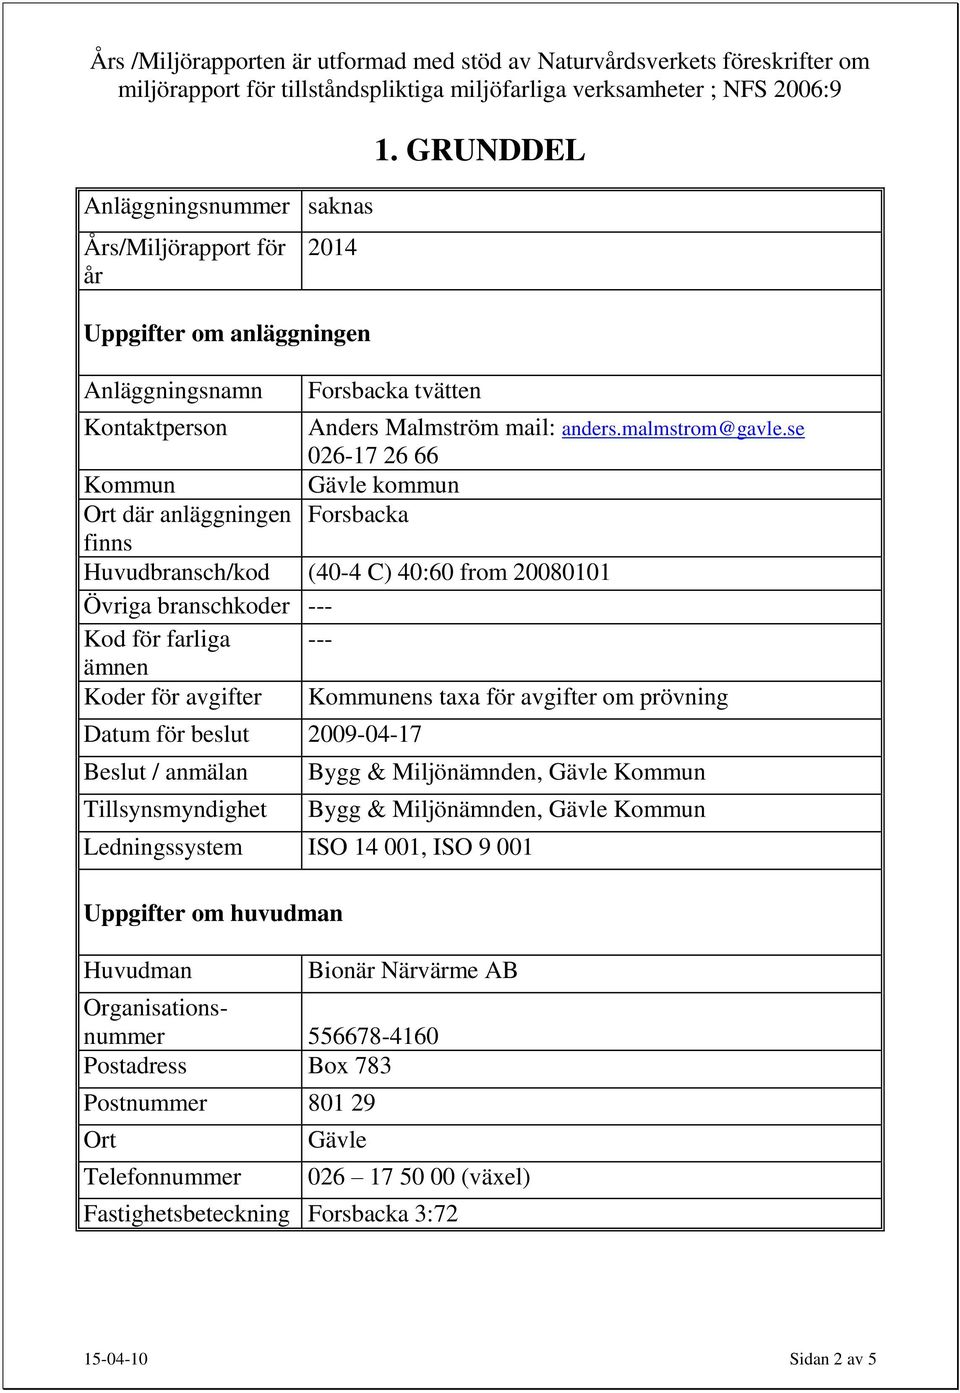 se 026-17 26 66 Kommun Gävle kommun Ort där anläggningen Forsbacka finns Huvudbransch/kod (40-4 C) 40:60 from 20080101 Övriga branschkoder --- Kod för farliga --- ämnen Koder för avgifter Kommunens